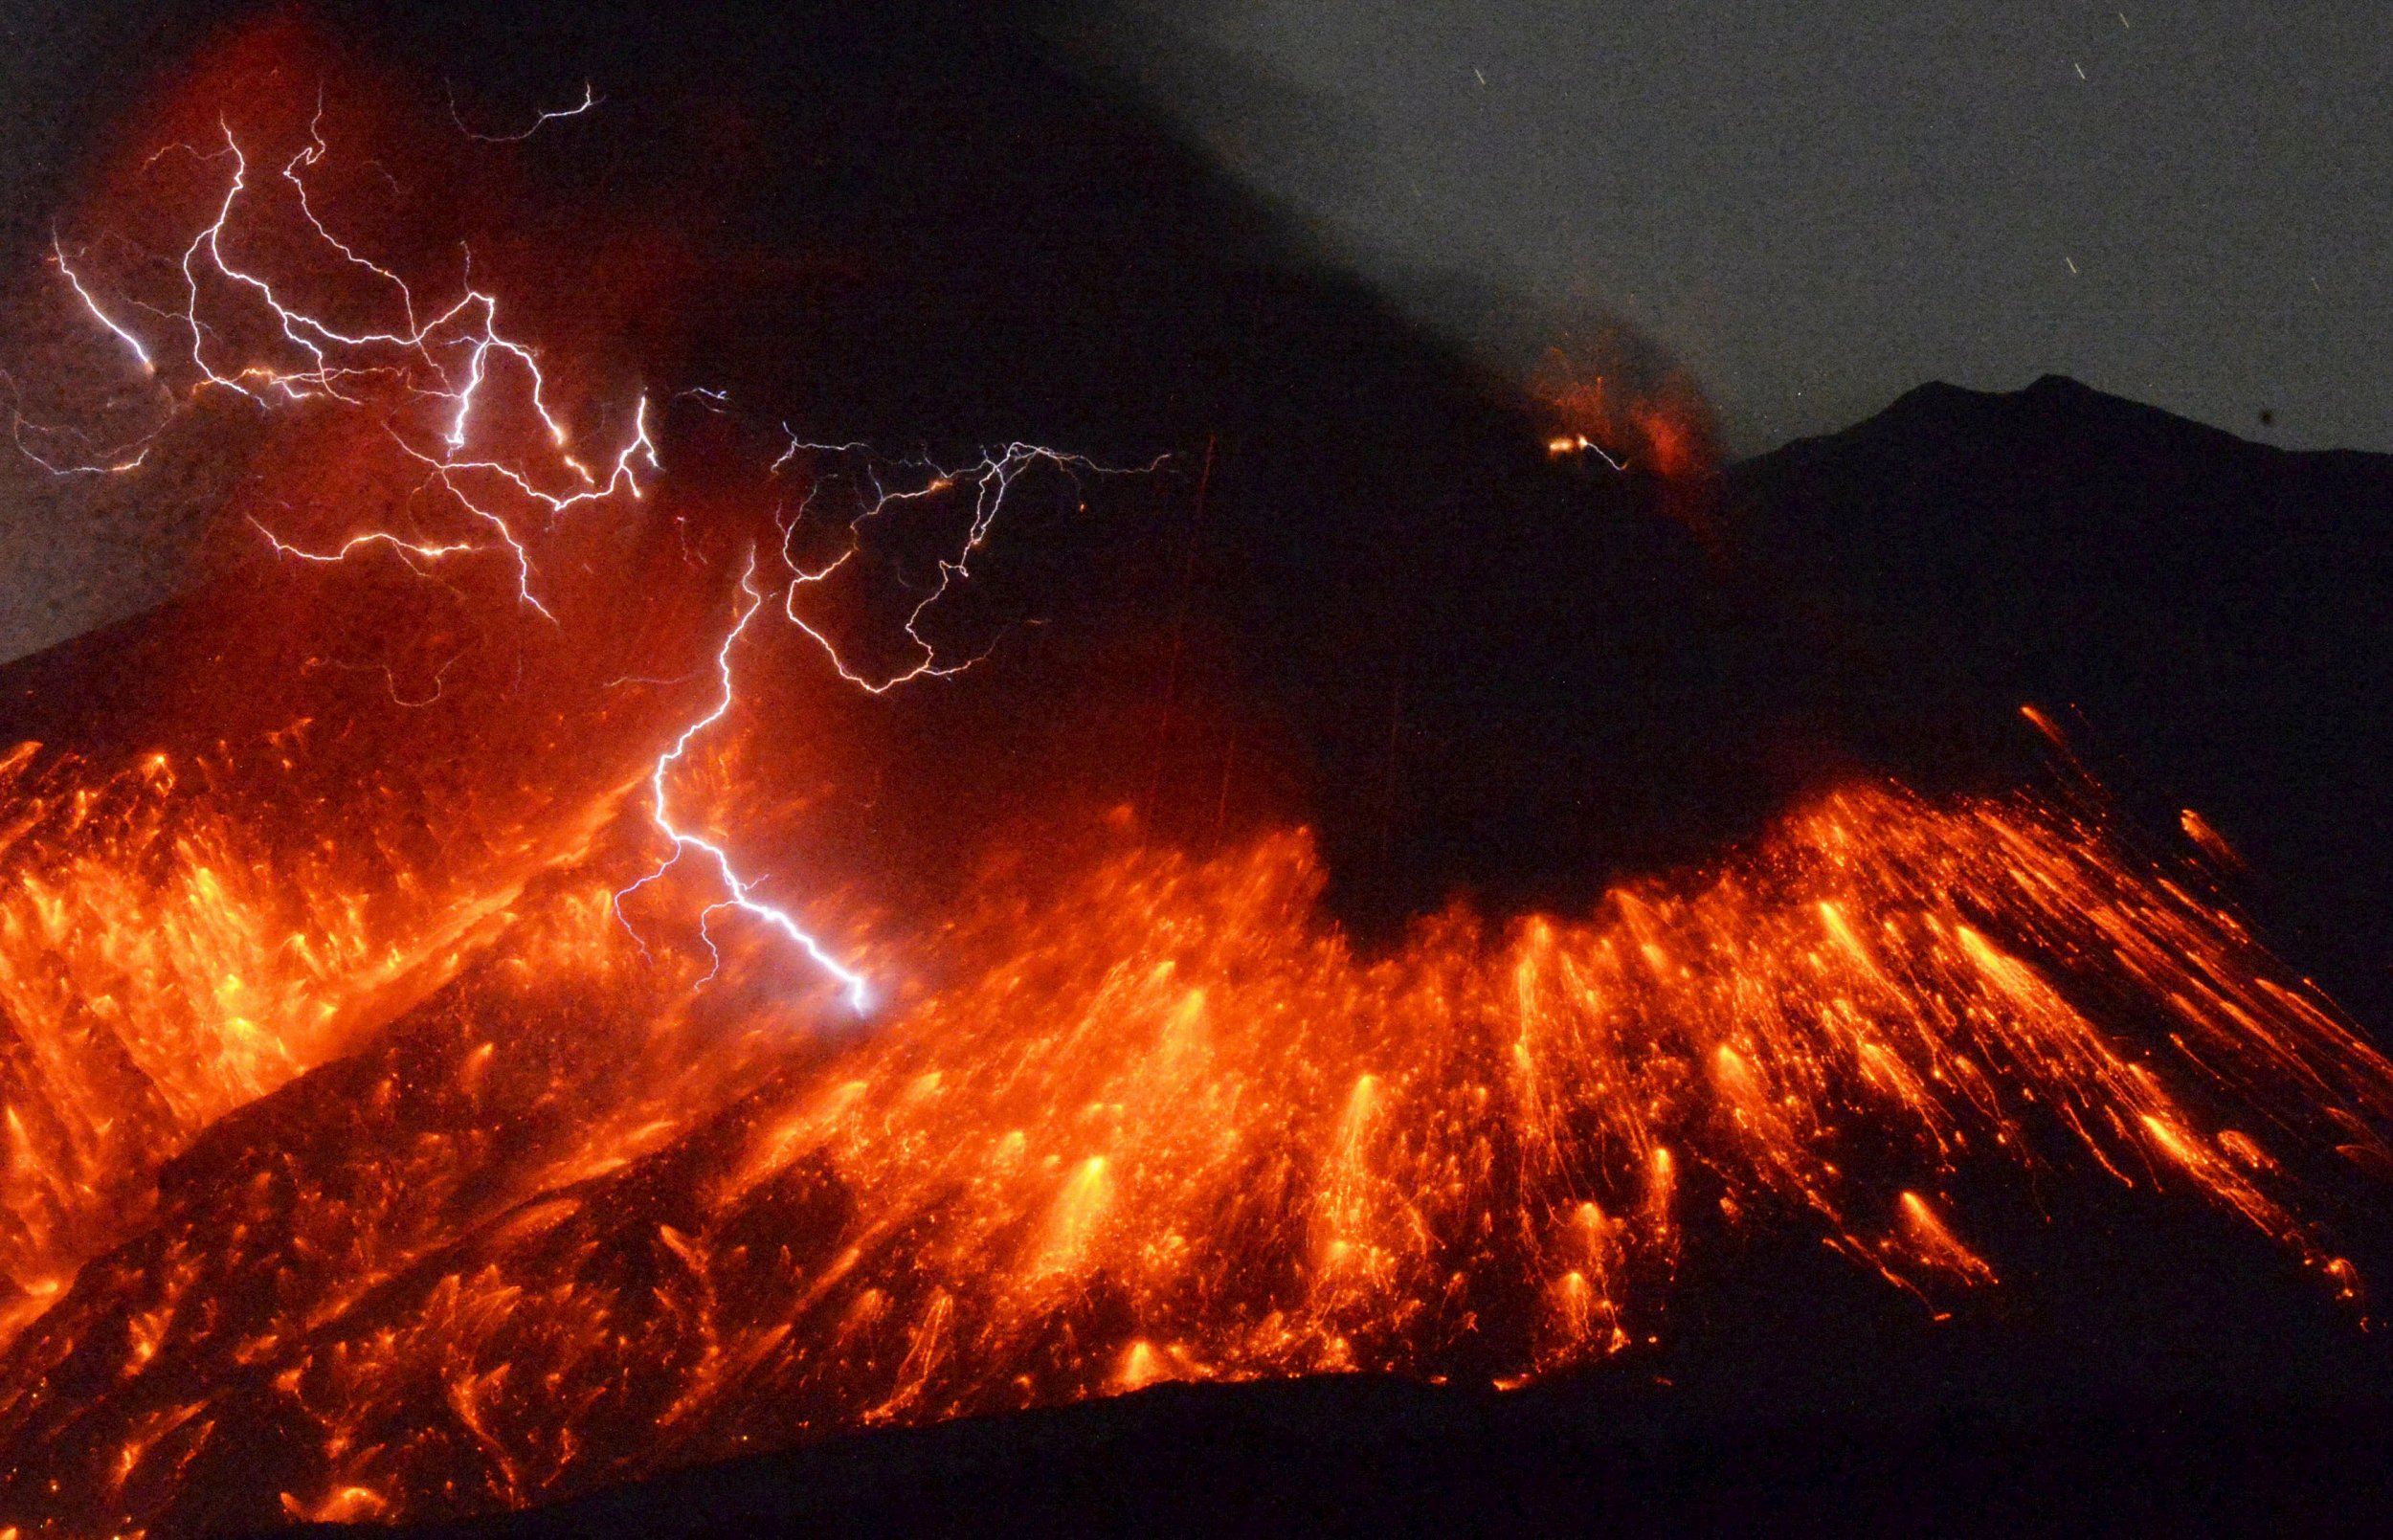 Ιαπωνία: Εκπληκτικές εικόνες από την έκρηξη του ηφαιστείου Sakurajima